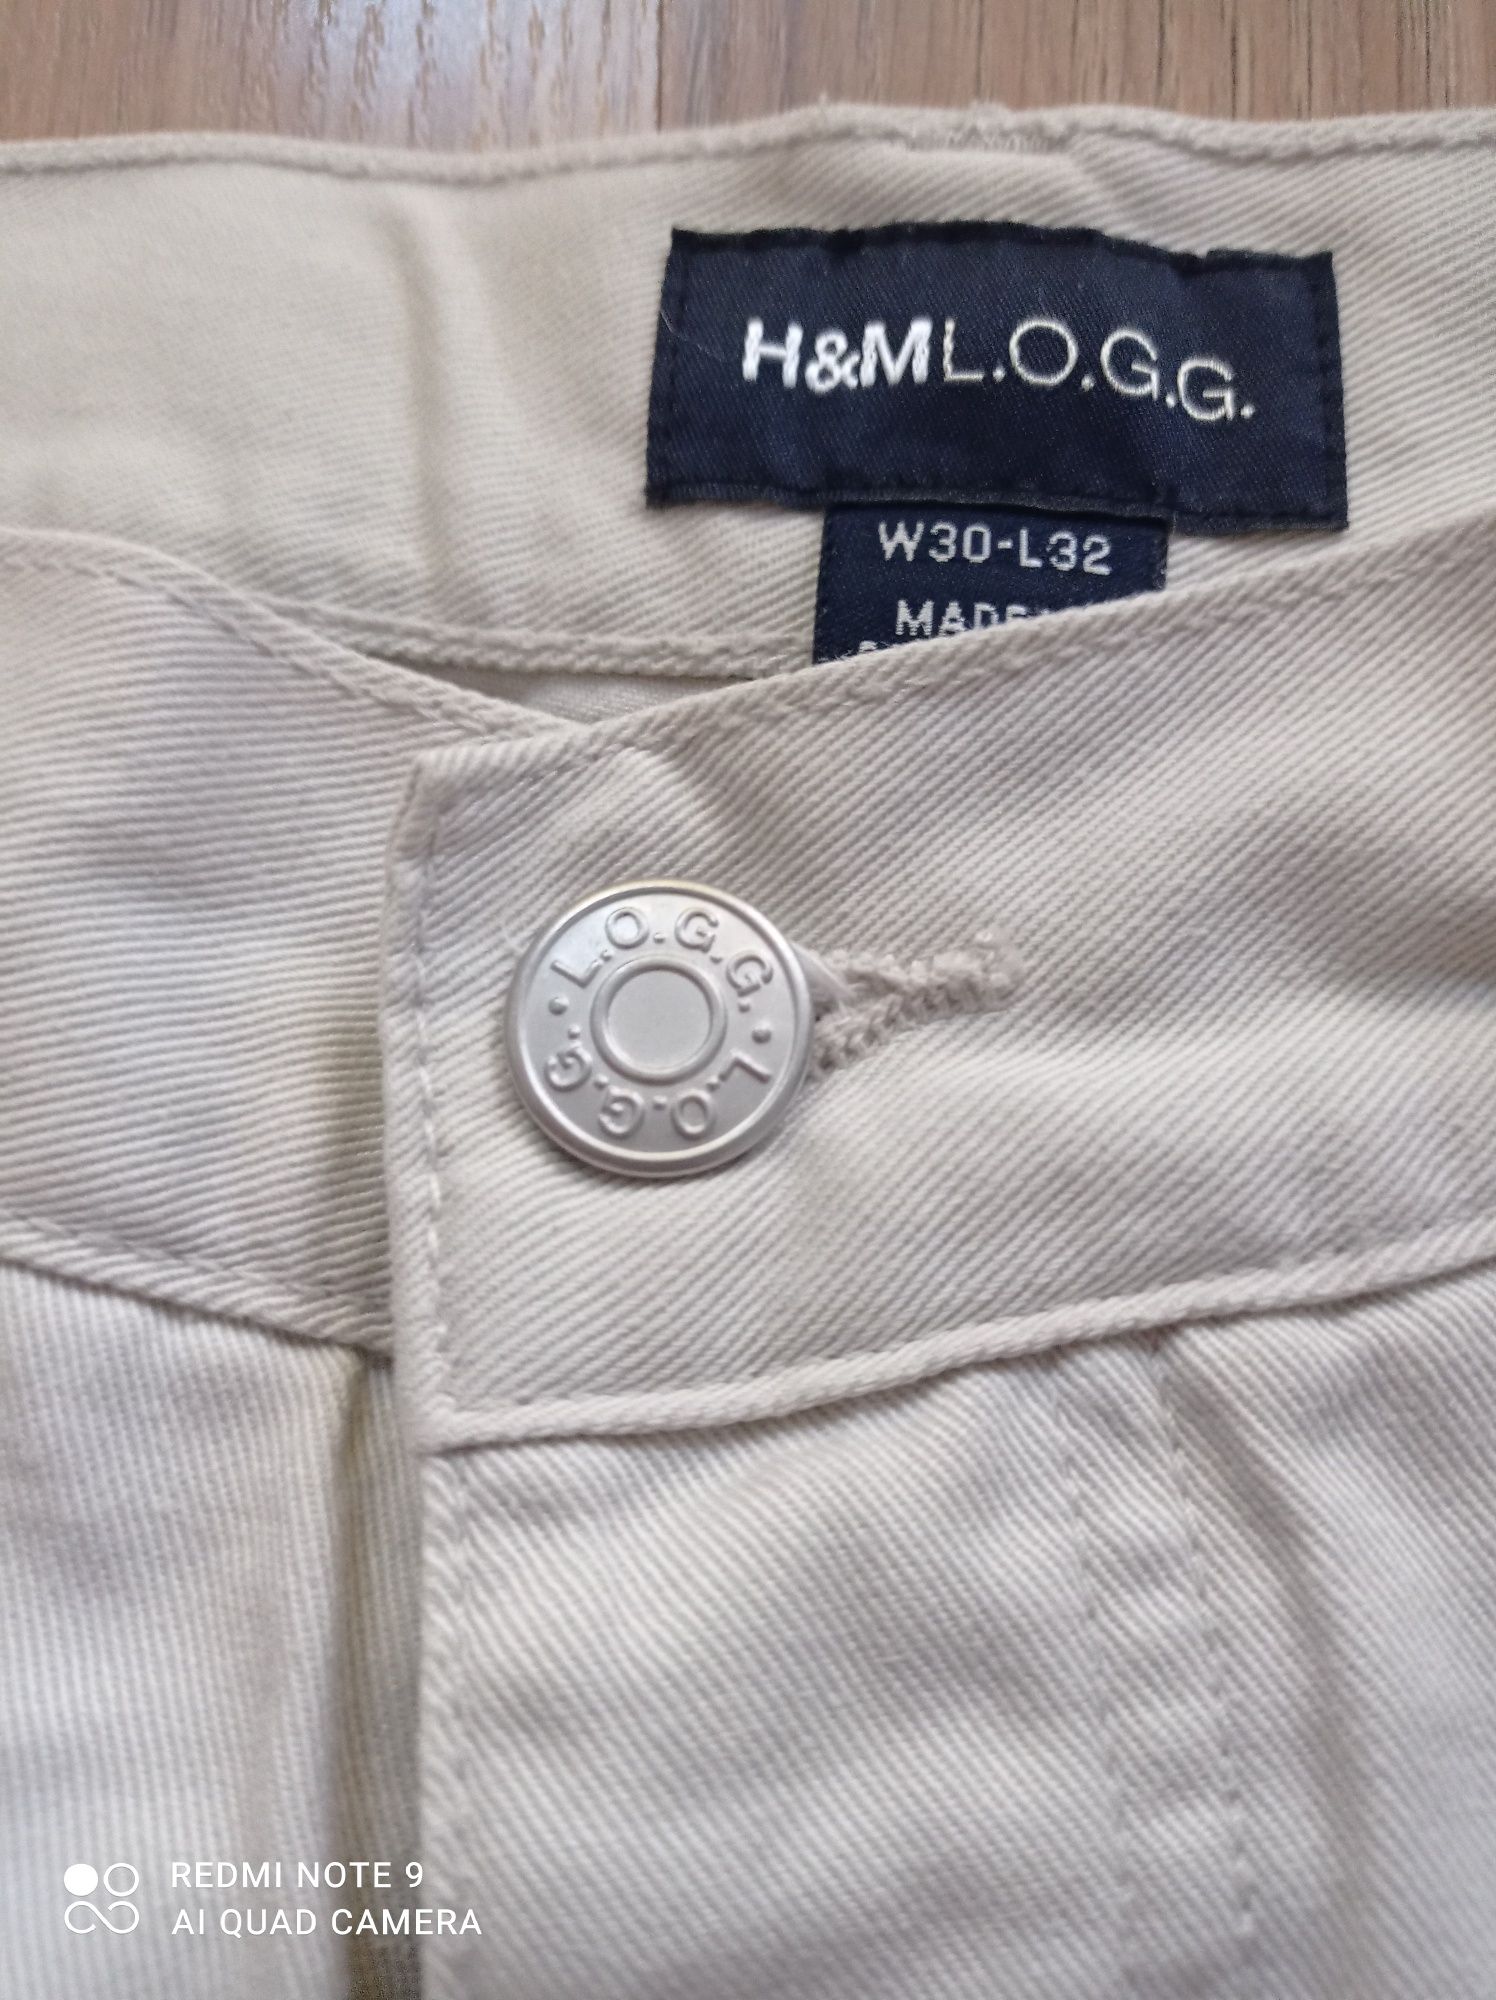 Spodnie męskie H&M.